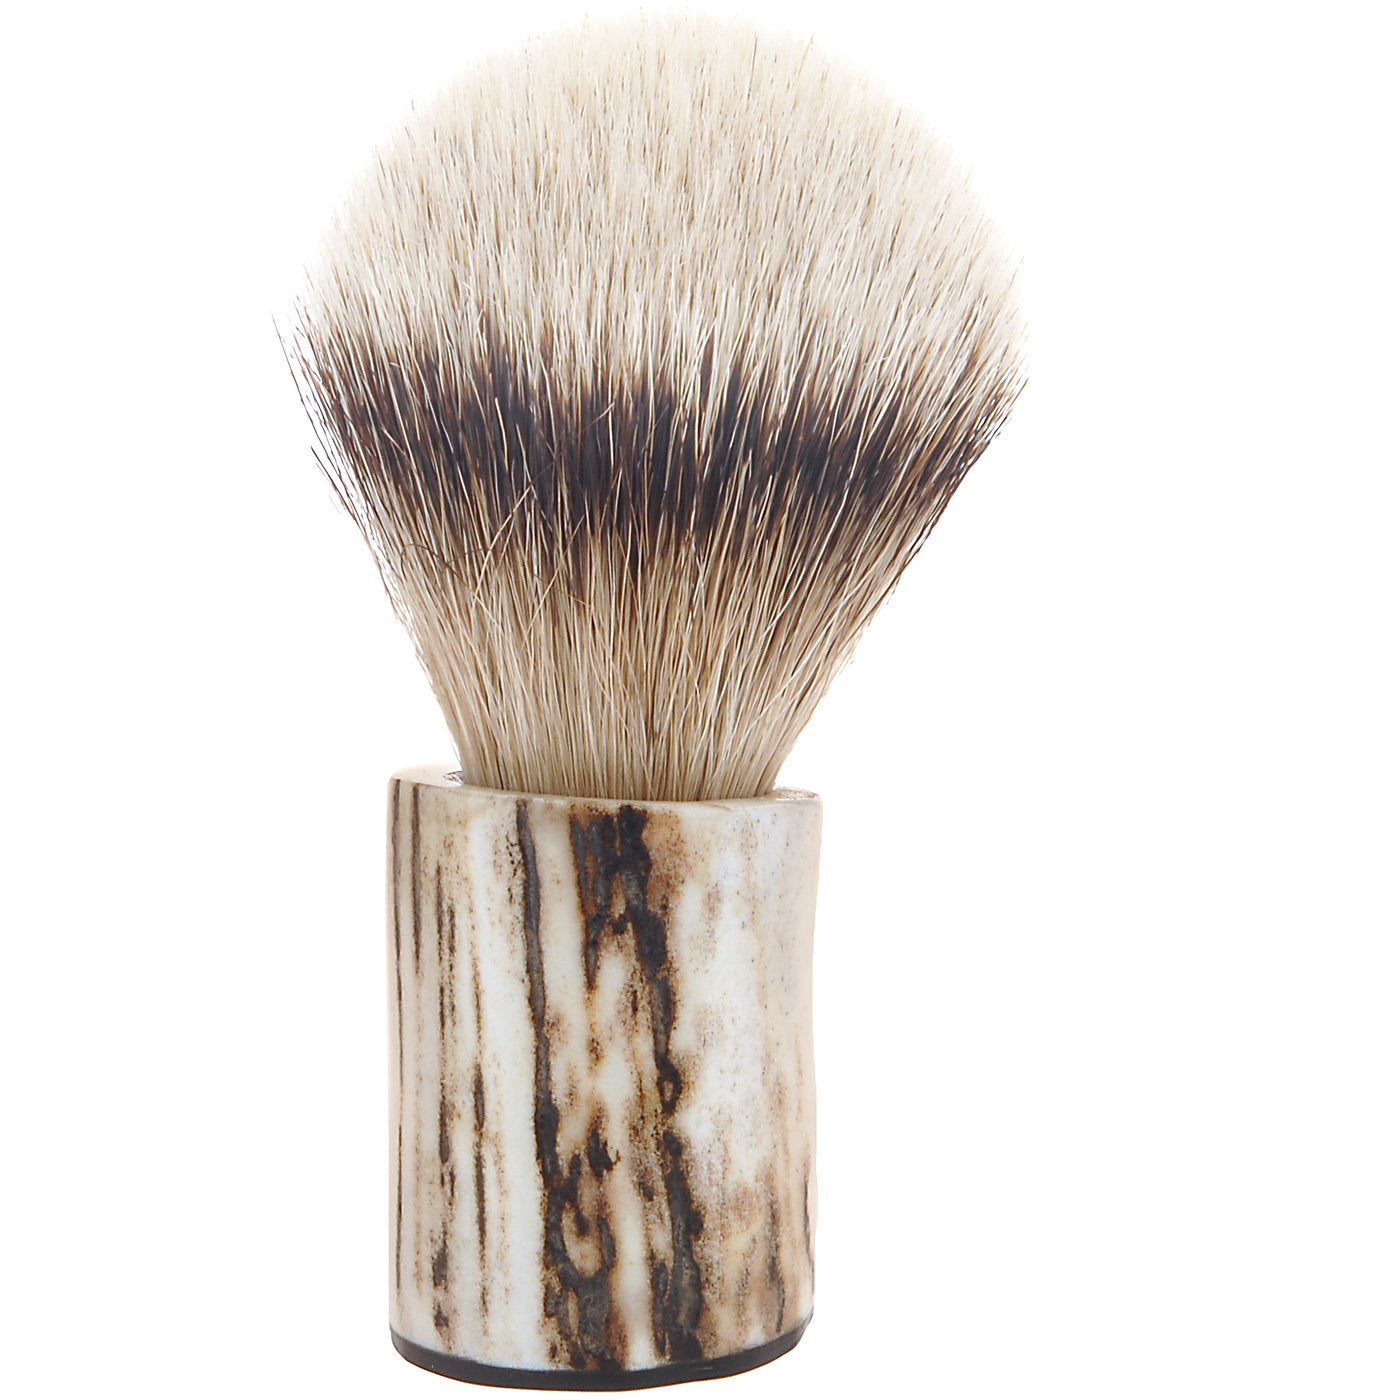 Shaving Brush in Deer Horn - Alternative view 1